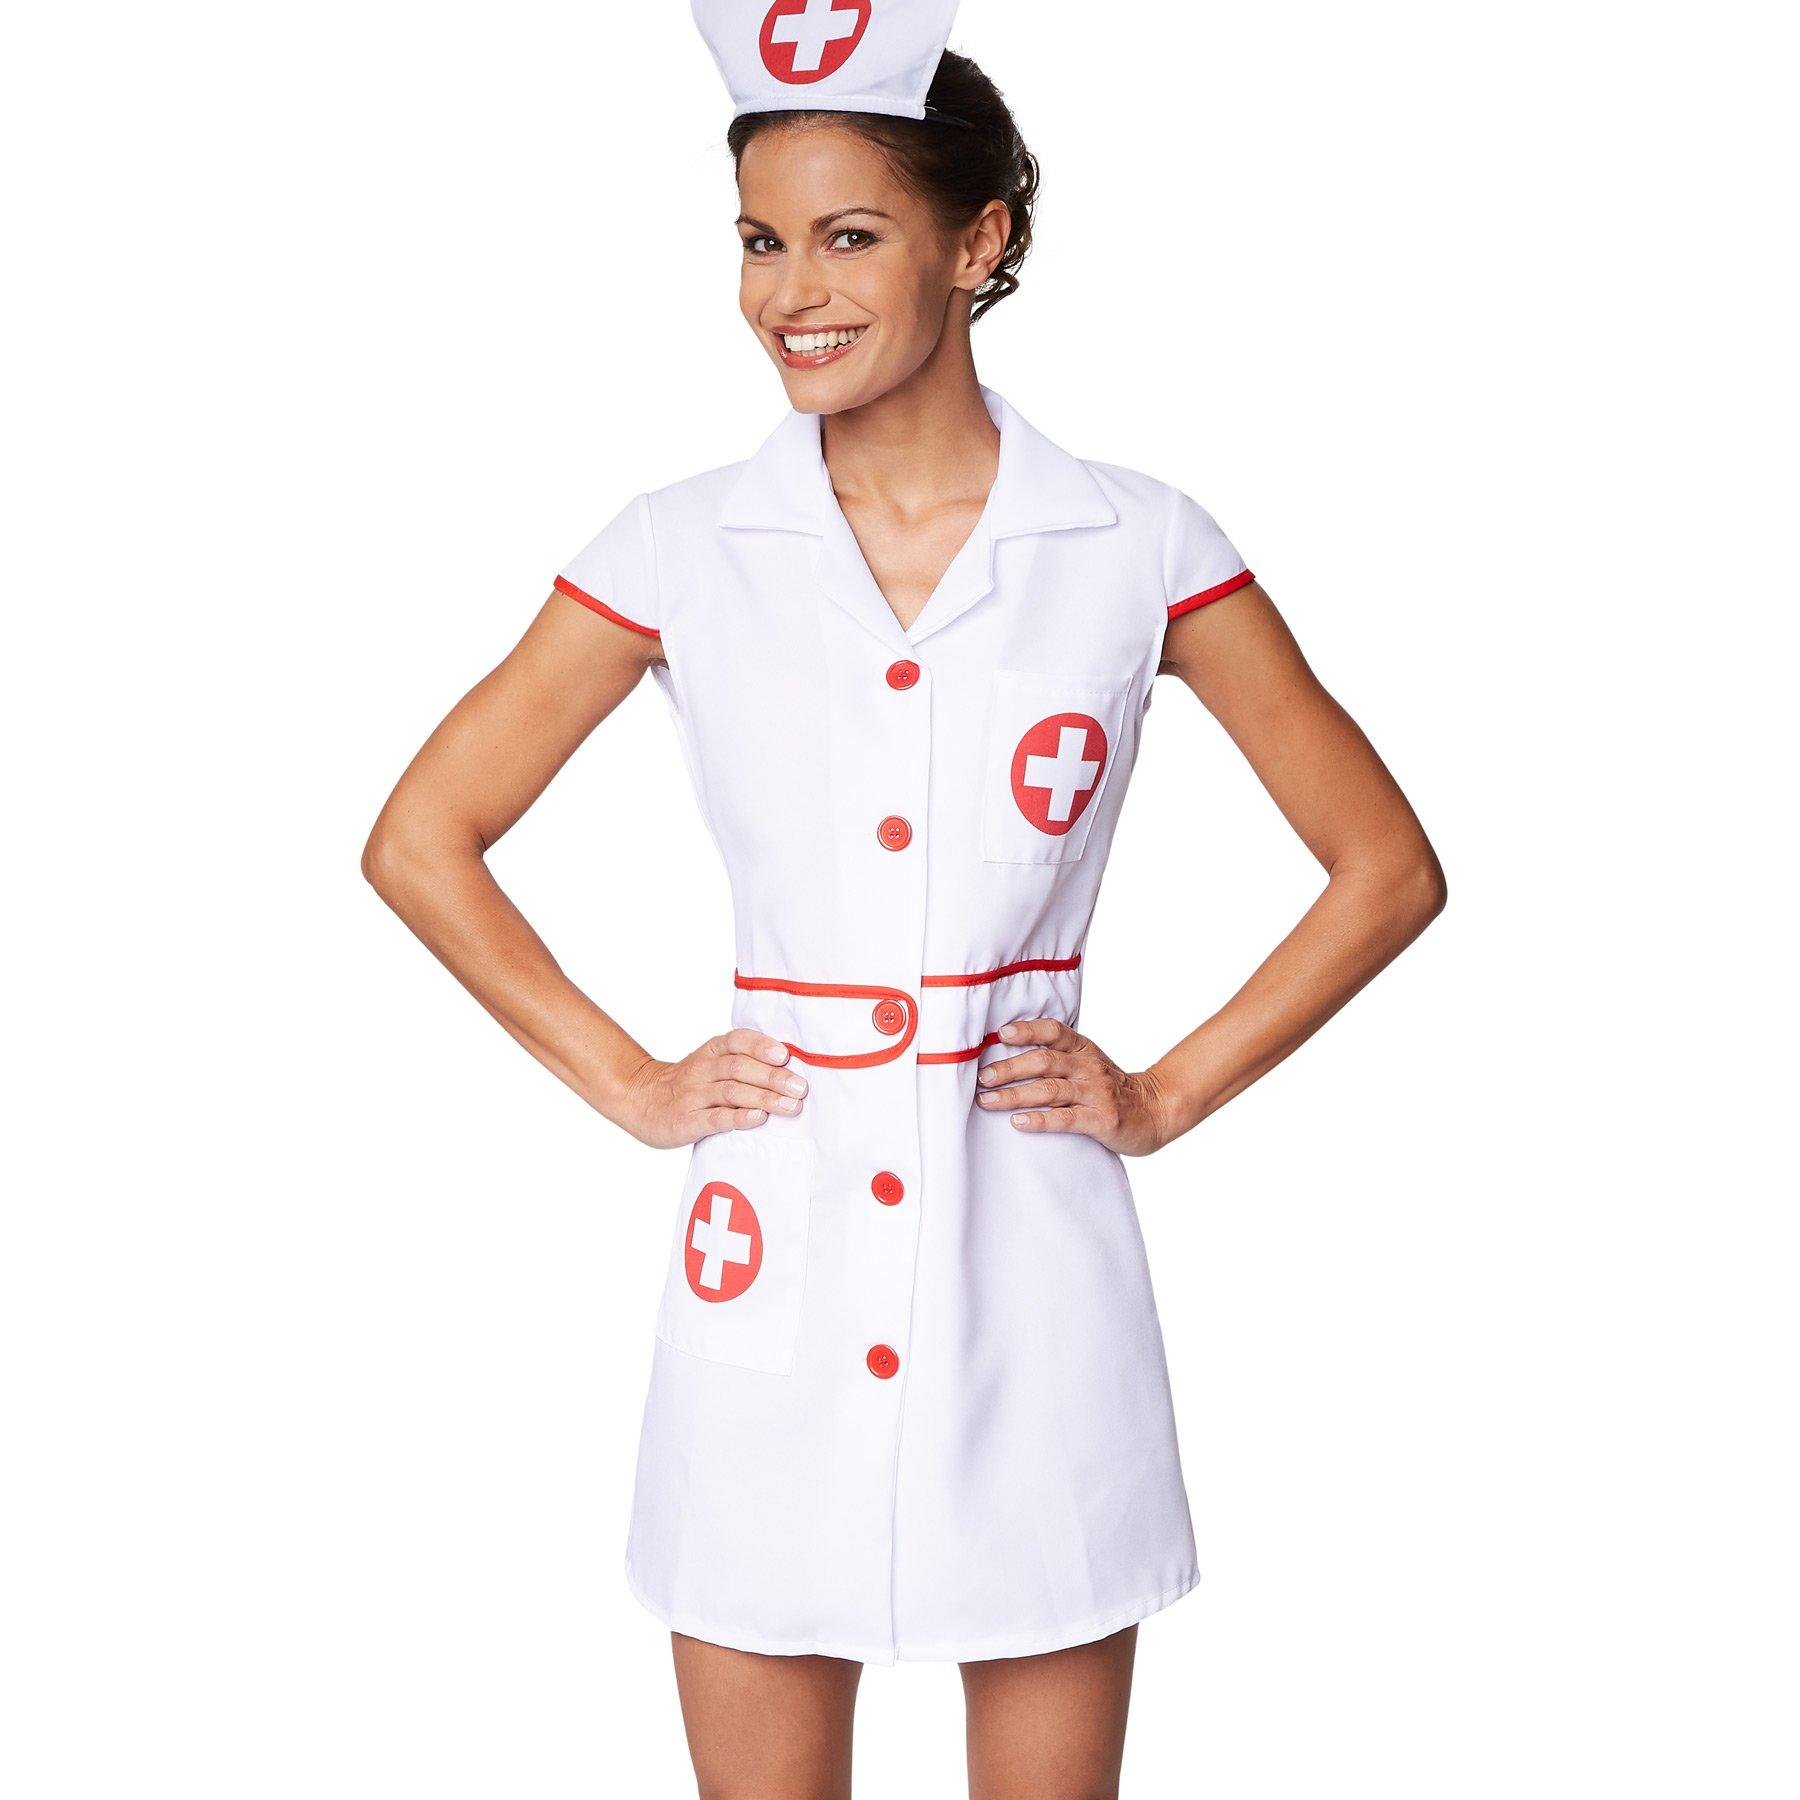 Tectake  Costume da donna infermiera sexy 